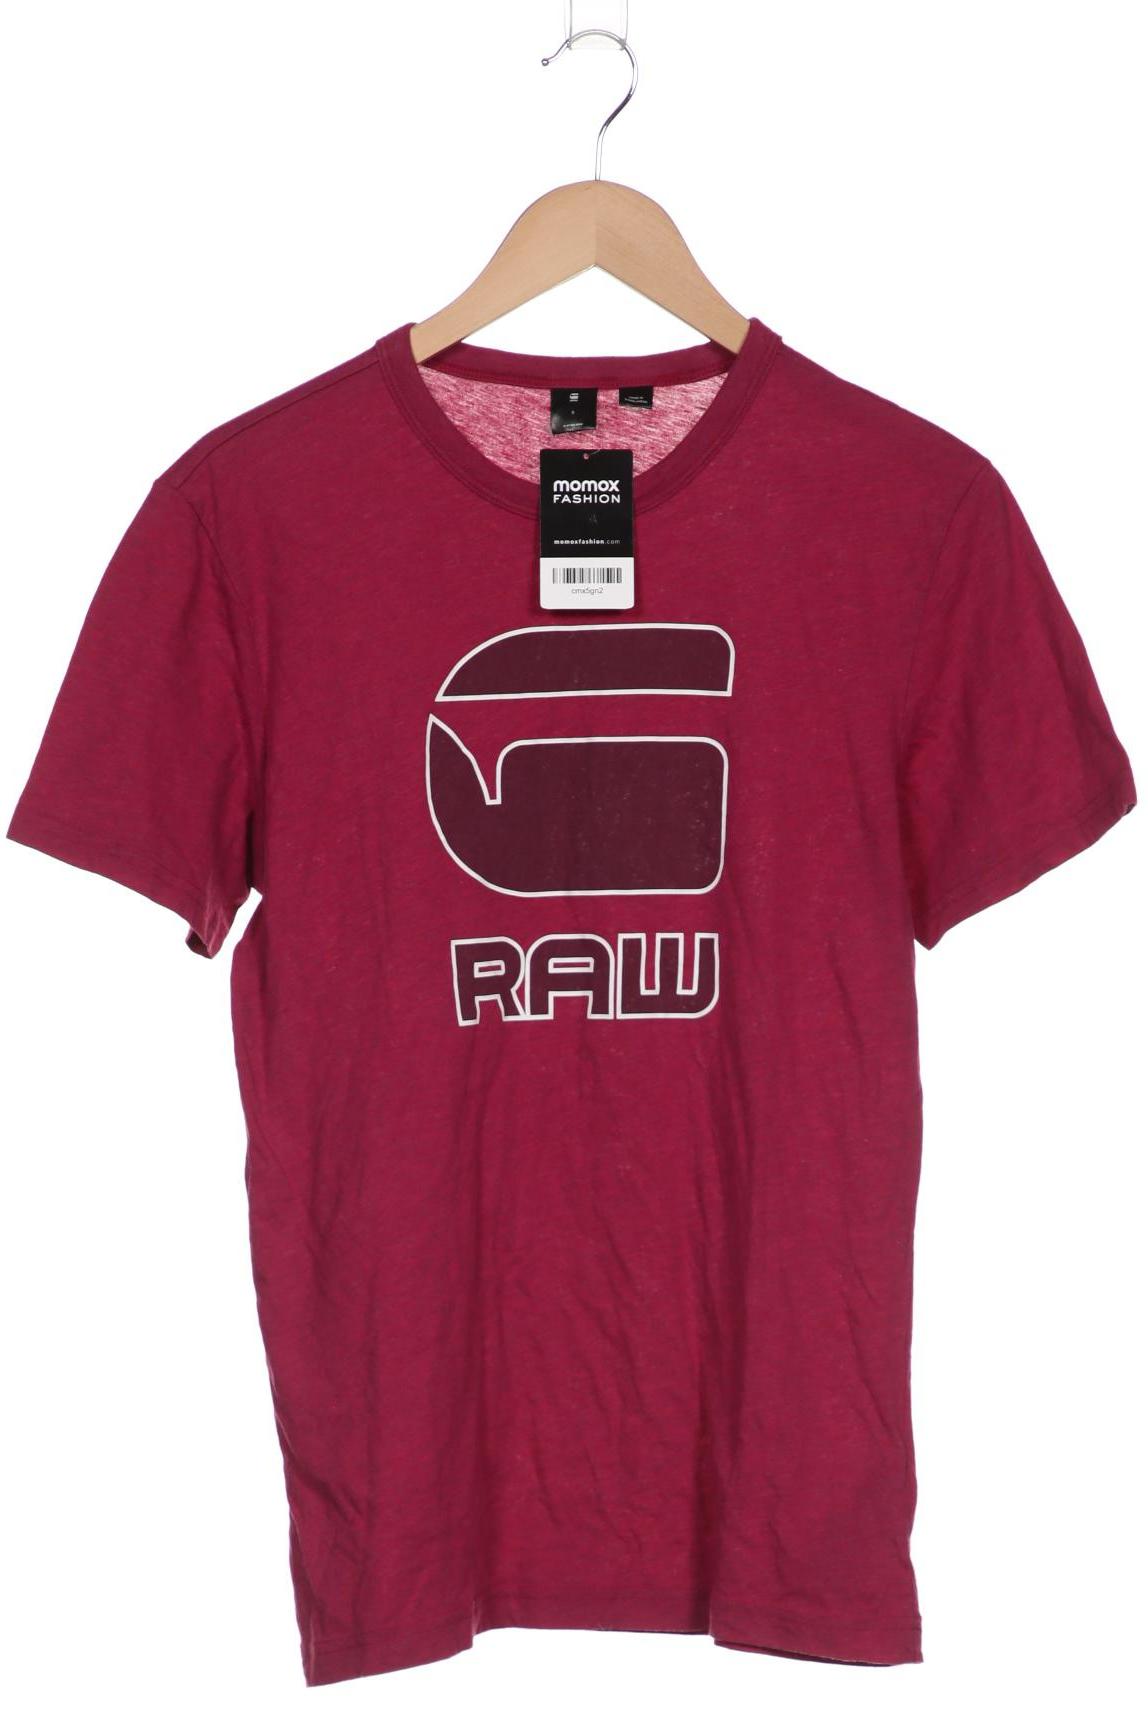 G-STAR RAW Herren T-Shirt, pink von G-Star Raw